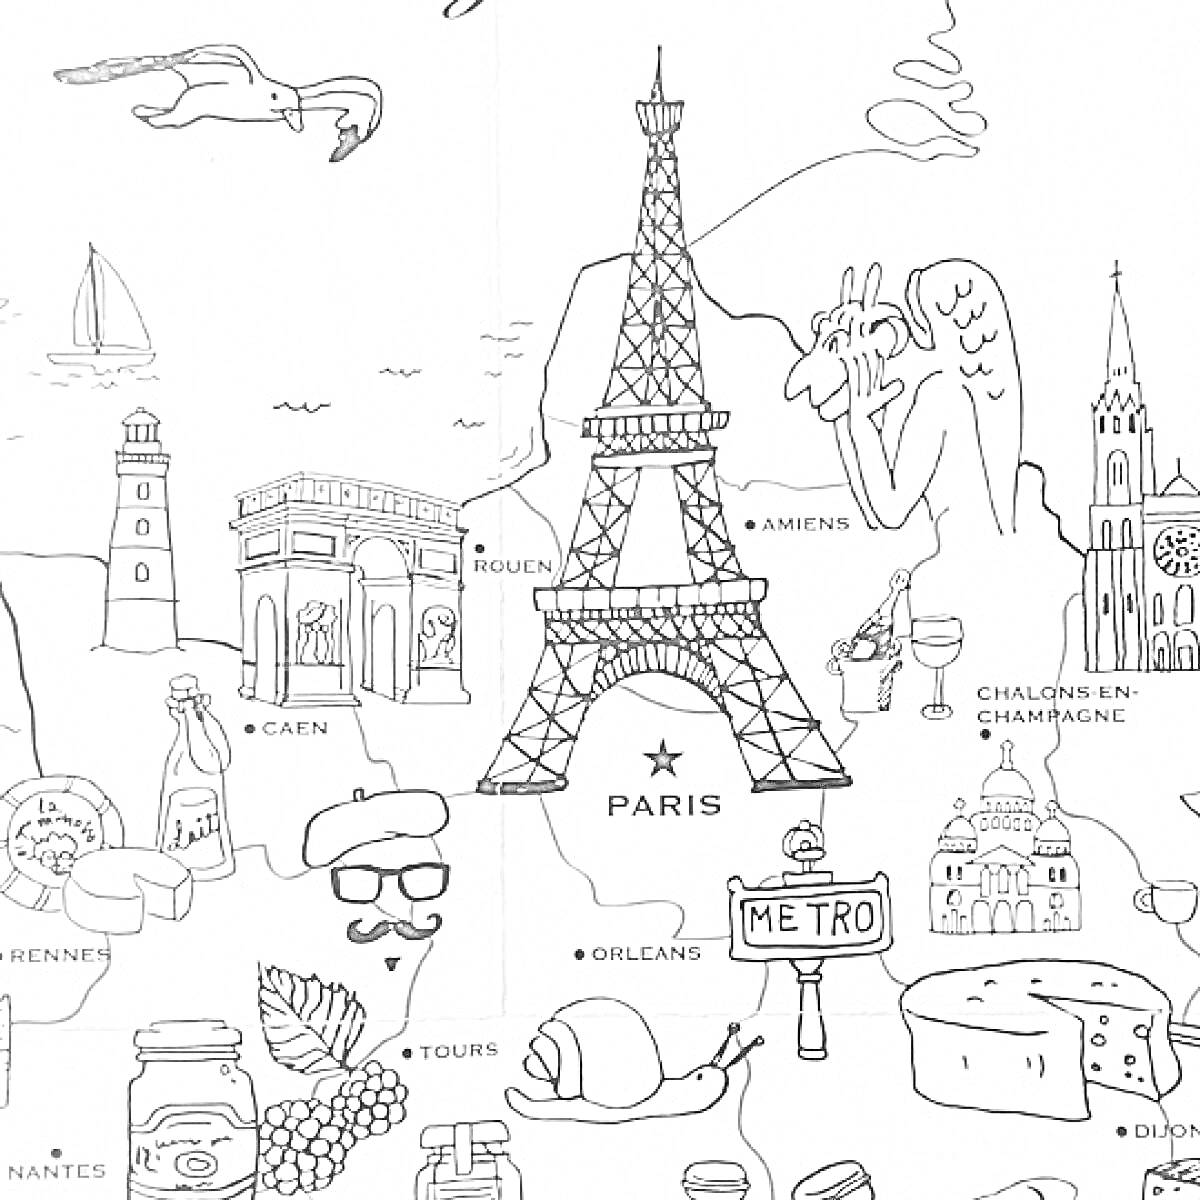 Эйфелева башня с элементами Франции, такими как арка в Триумфе, Бернард Вердье, метро, багет, сыр, круассан, виноград на фоне достопримечательностей Франции